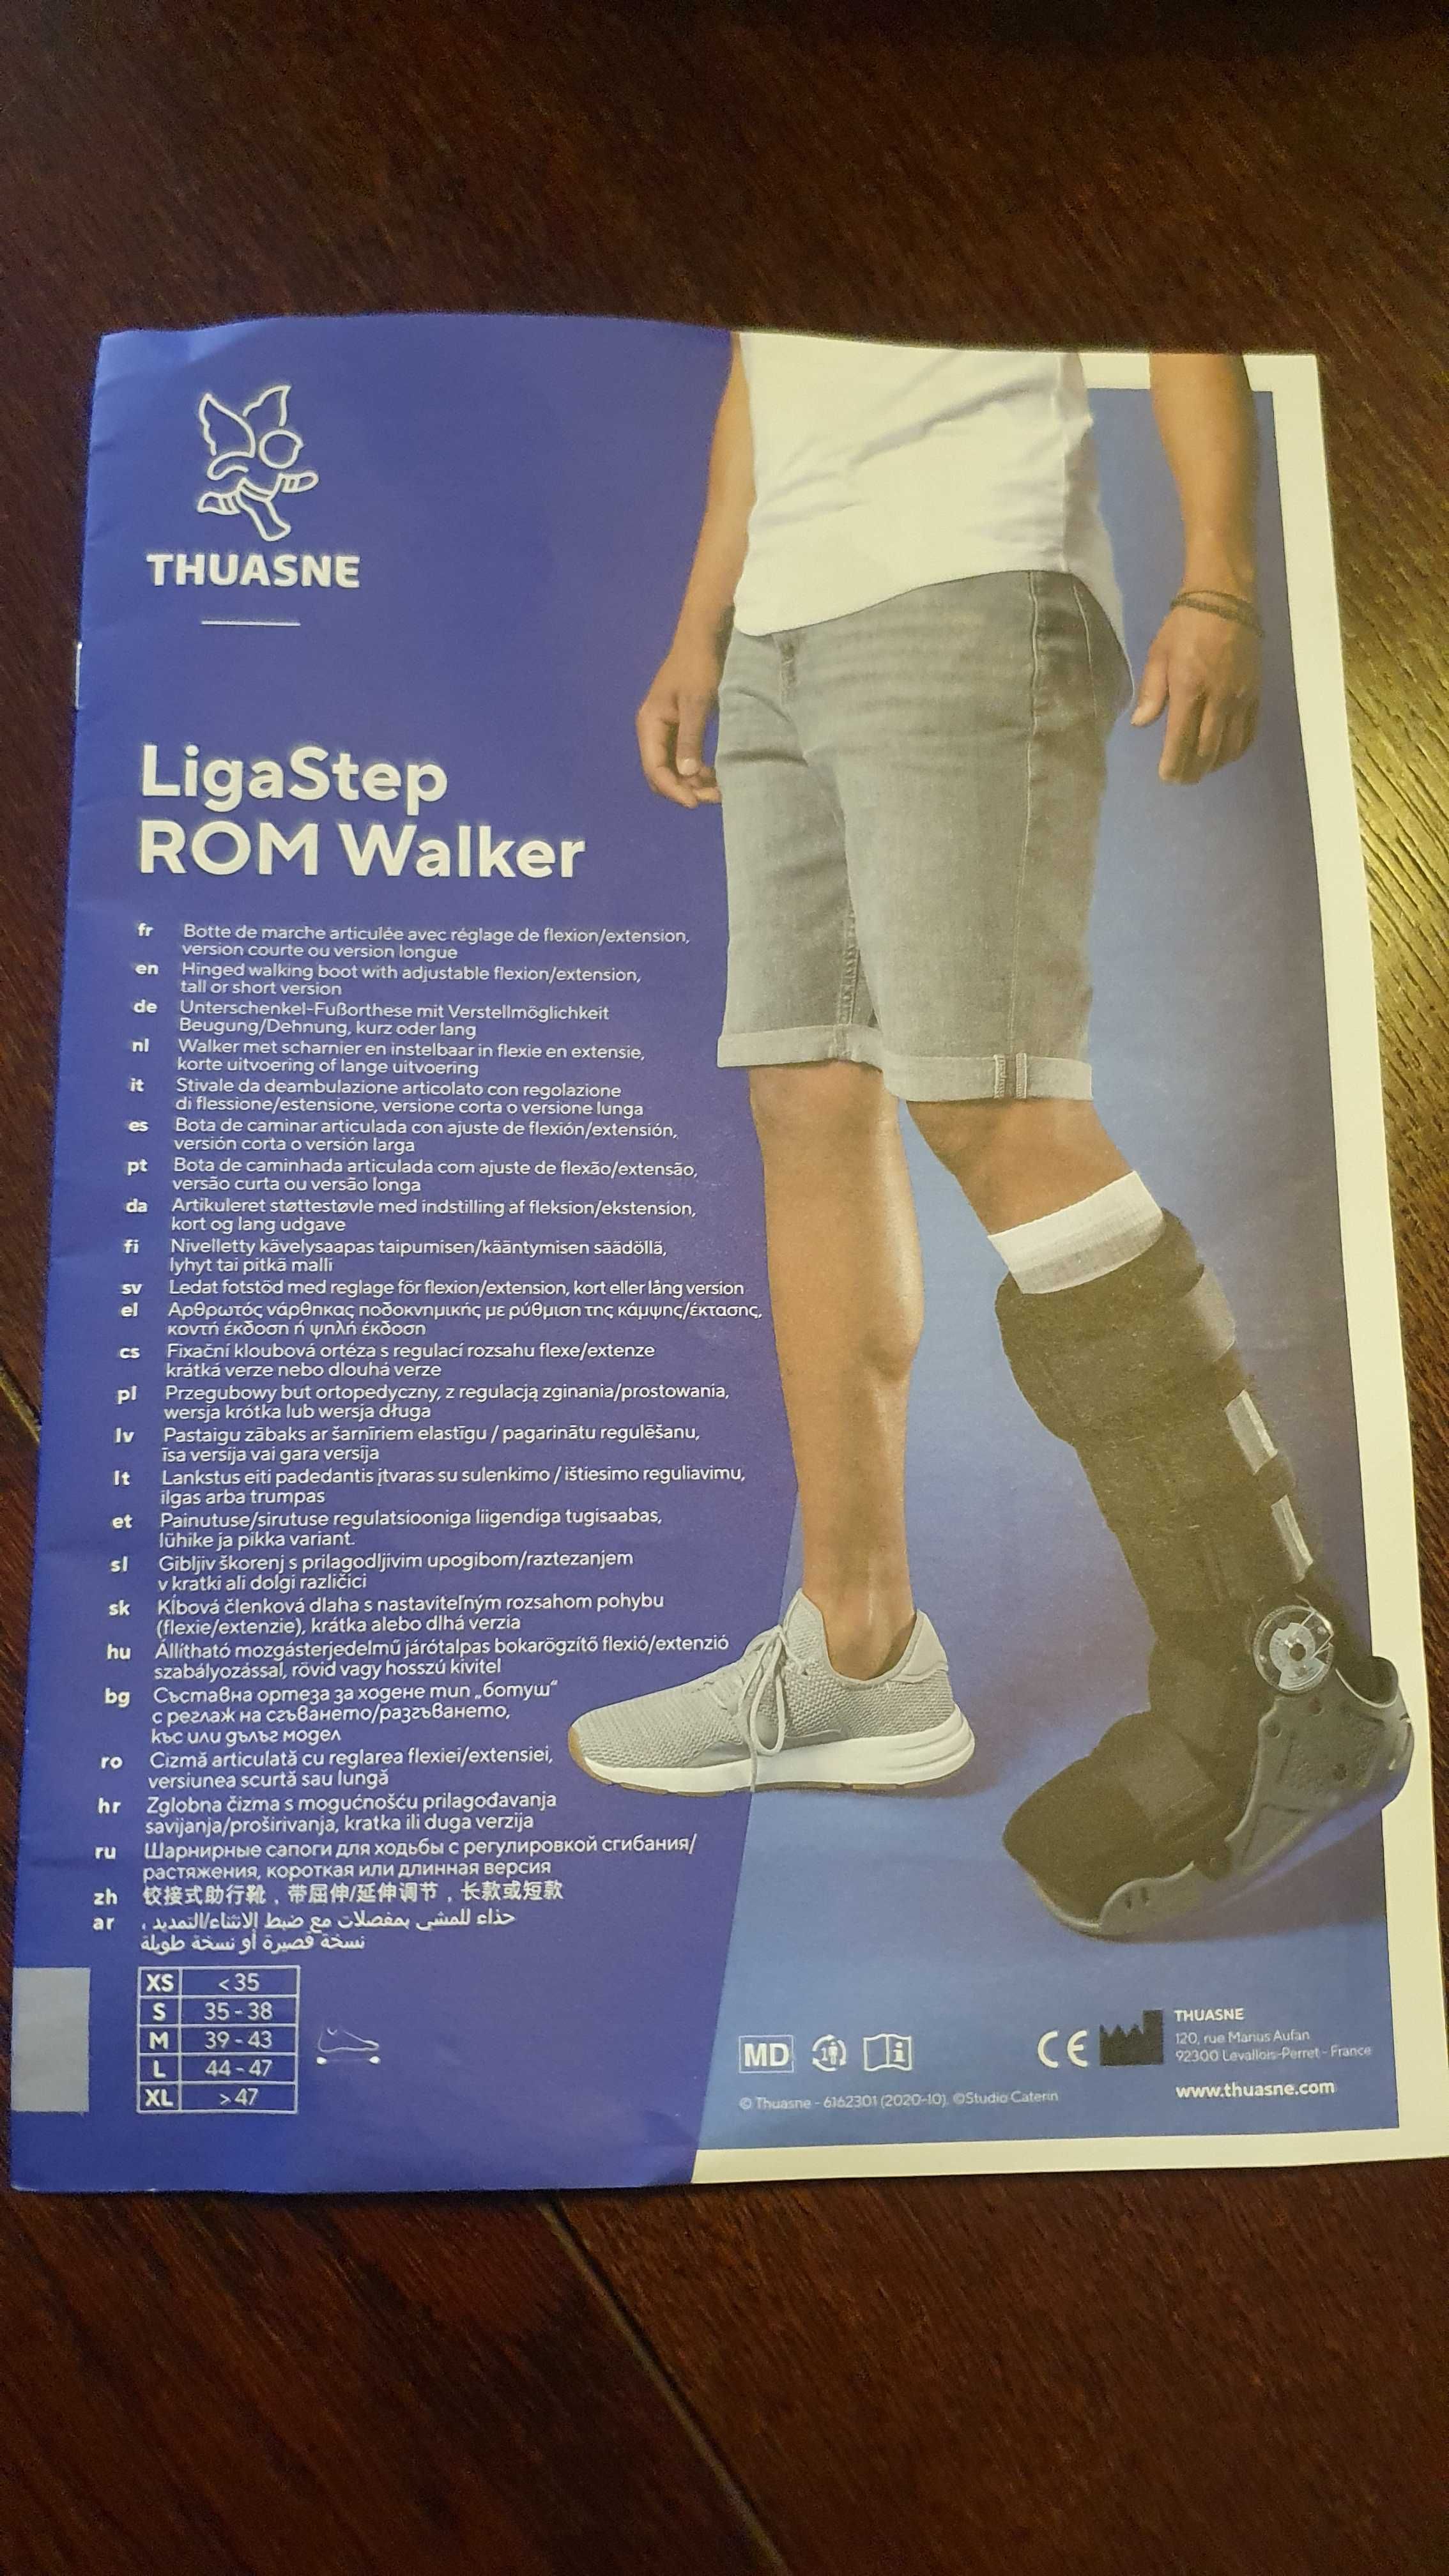 But ortopedyczny Ligastep Rom Walker rozmiar L 44-47 nowy 100%